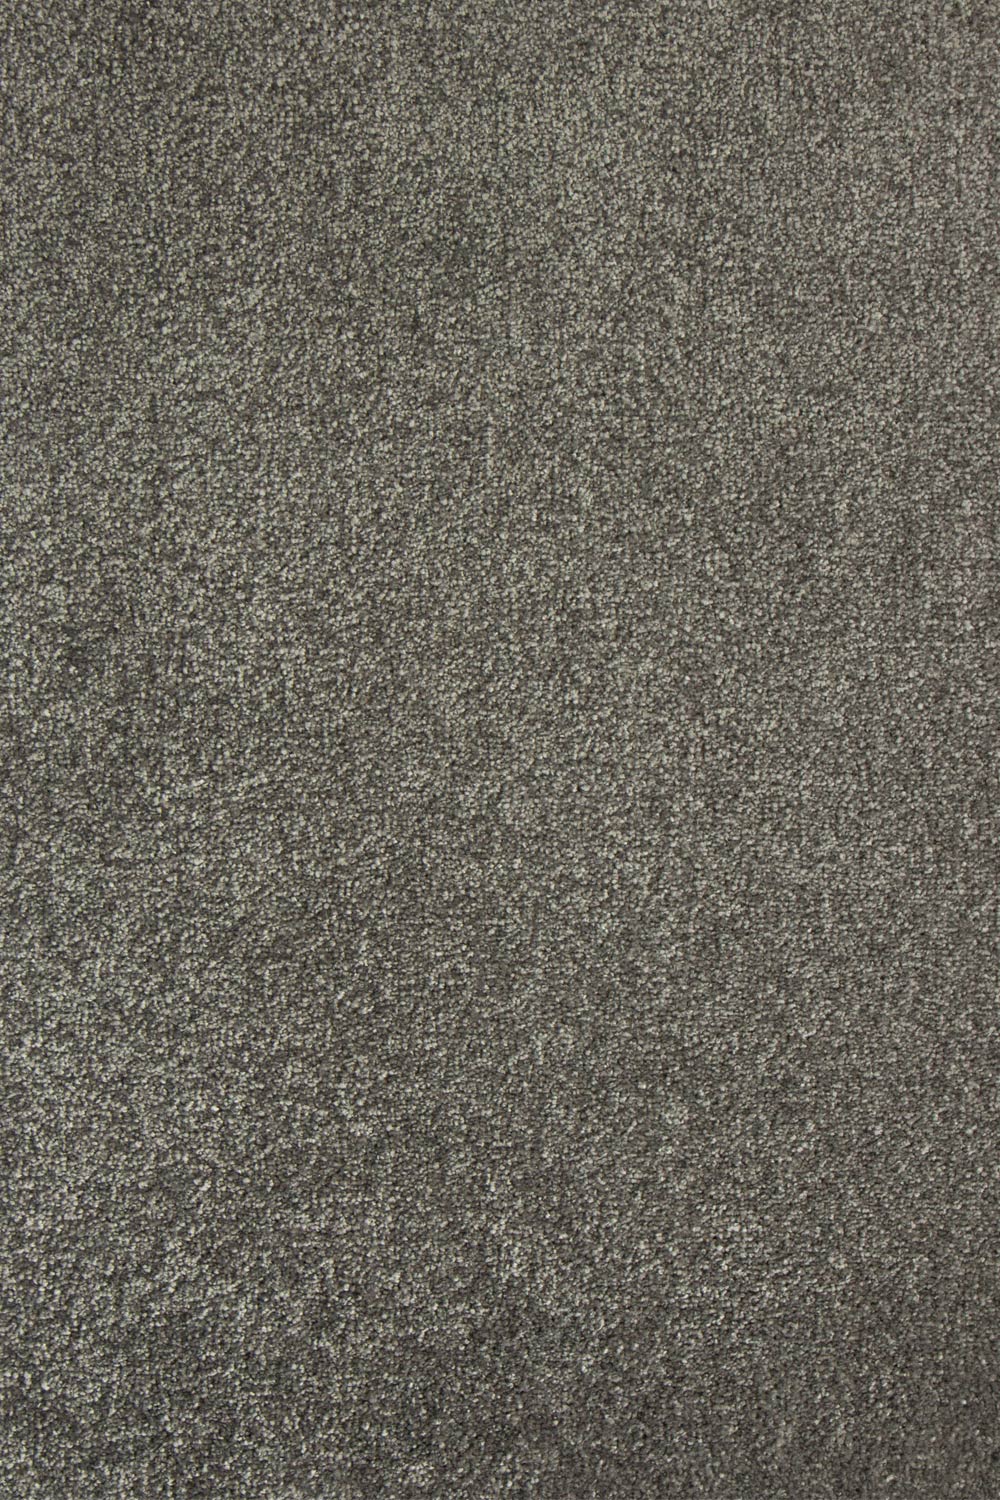 Metrážový koberec Swindon 49 světle hnědá